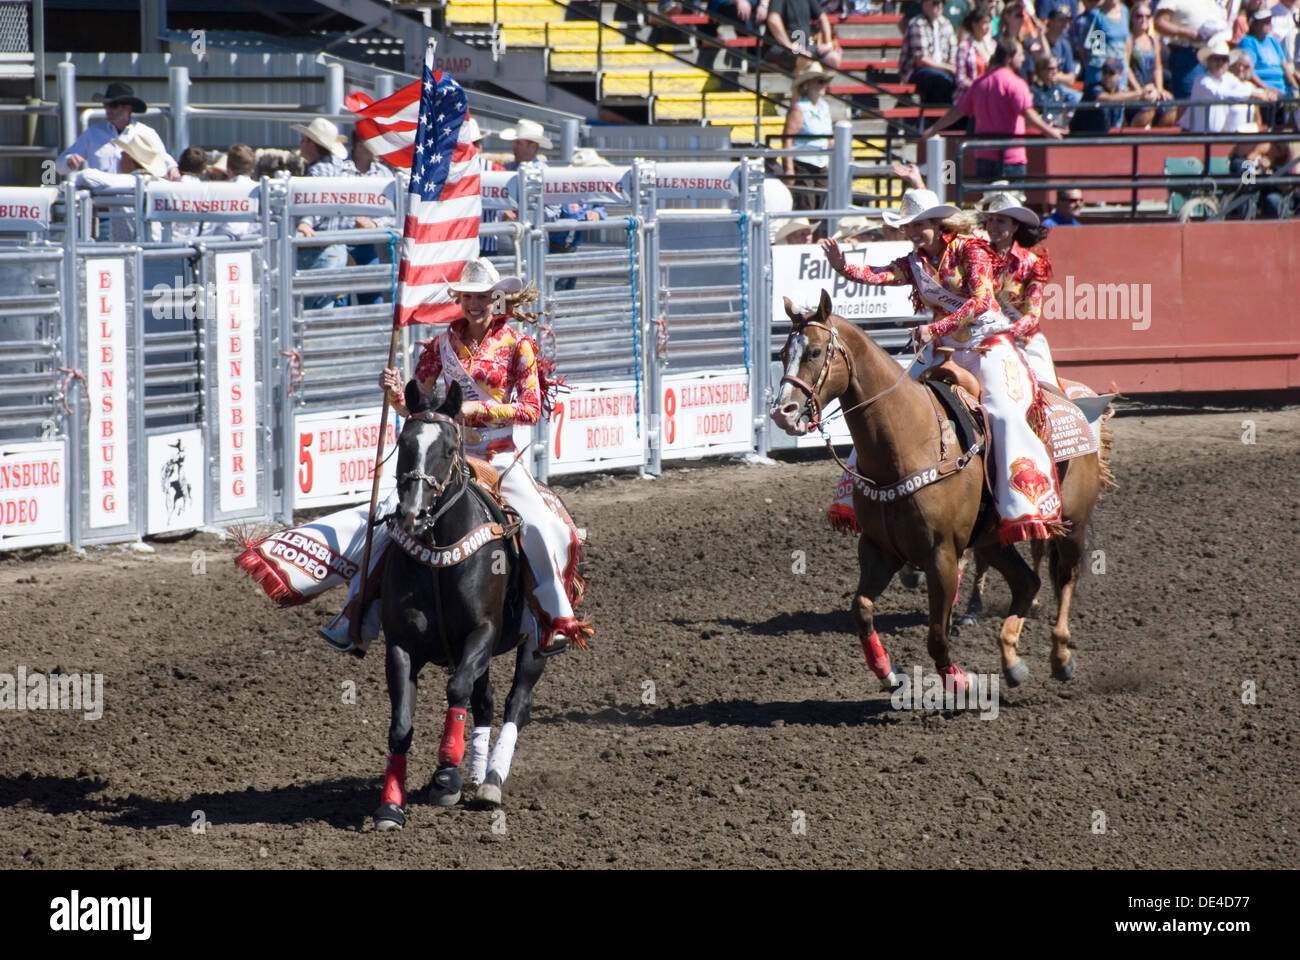 Cowgirl Flagbearers im Galopp auf dem Pferd mit amerikanischen Stars und Stripes Flaggen, Ellensburg Rodeo Öffnung Zeremonie, WA, USA Stockfoto